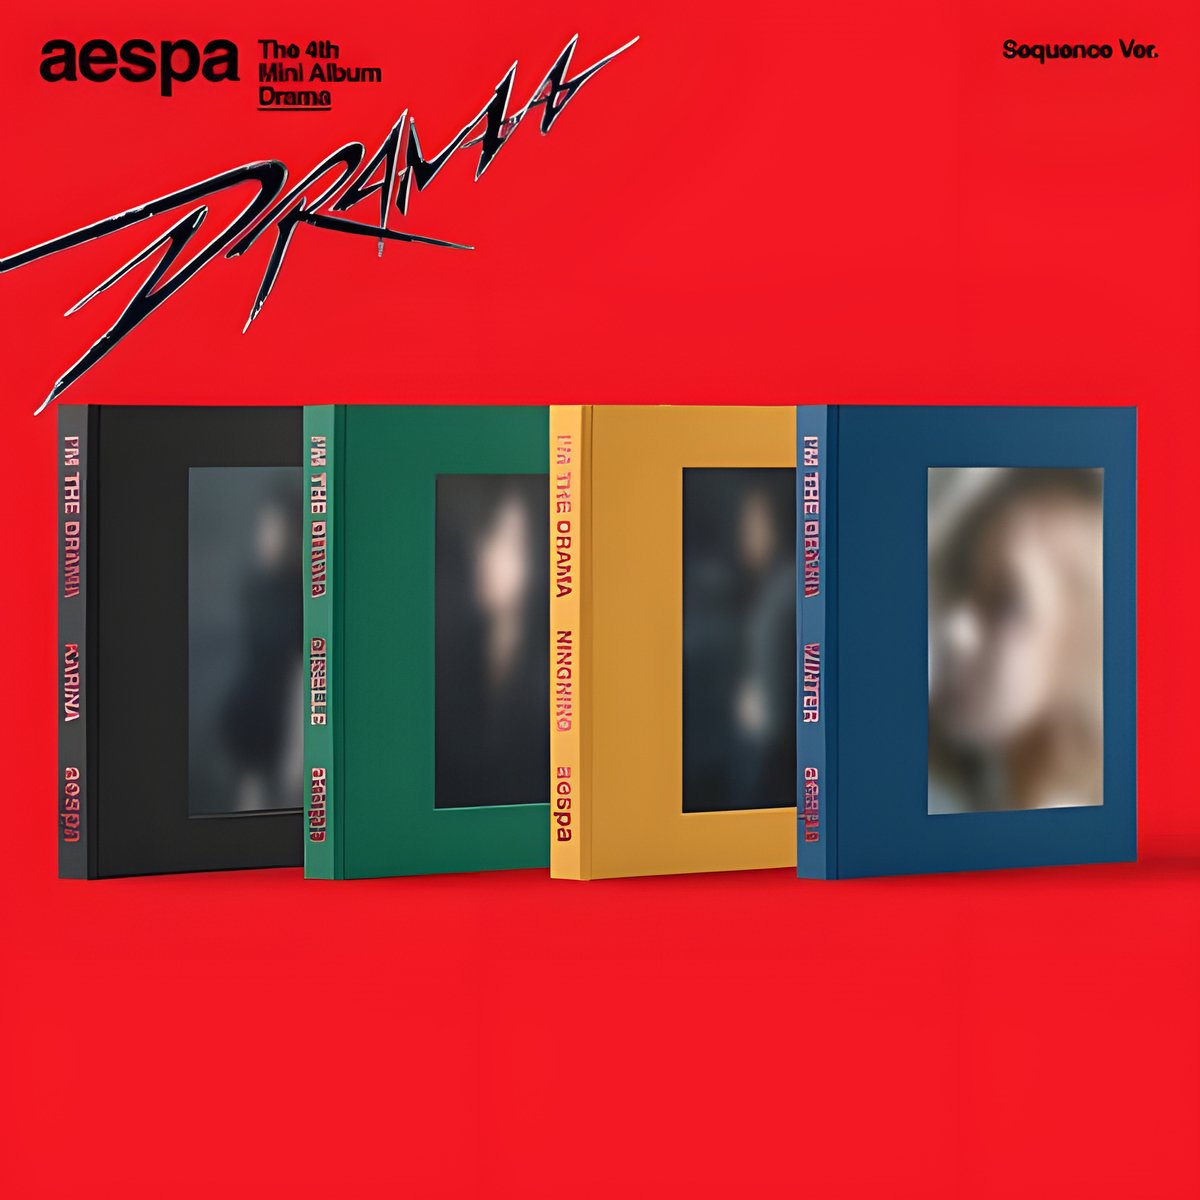 aespa – 4th Mini Album [Drama] (Sequence Ver.) [K-POP ALBUM]